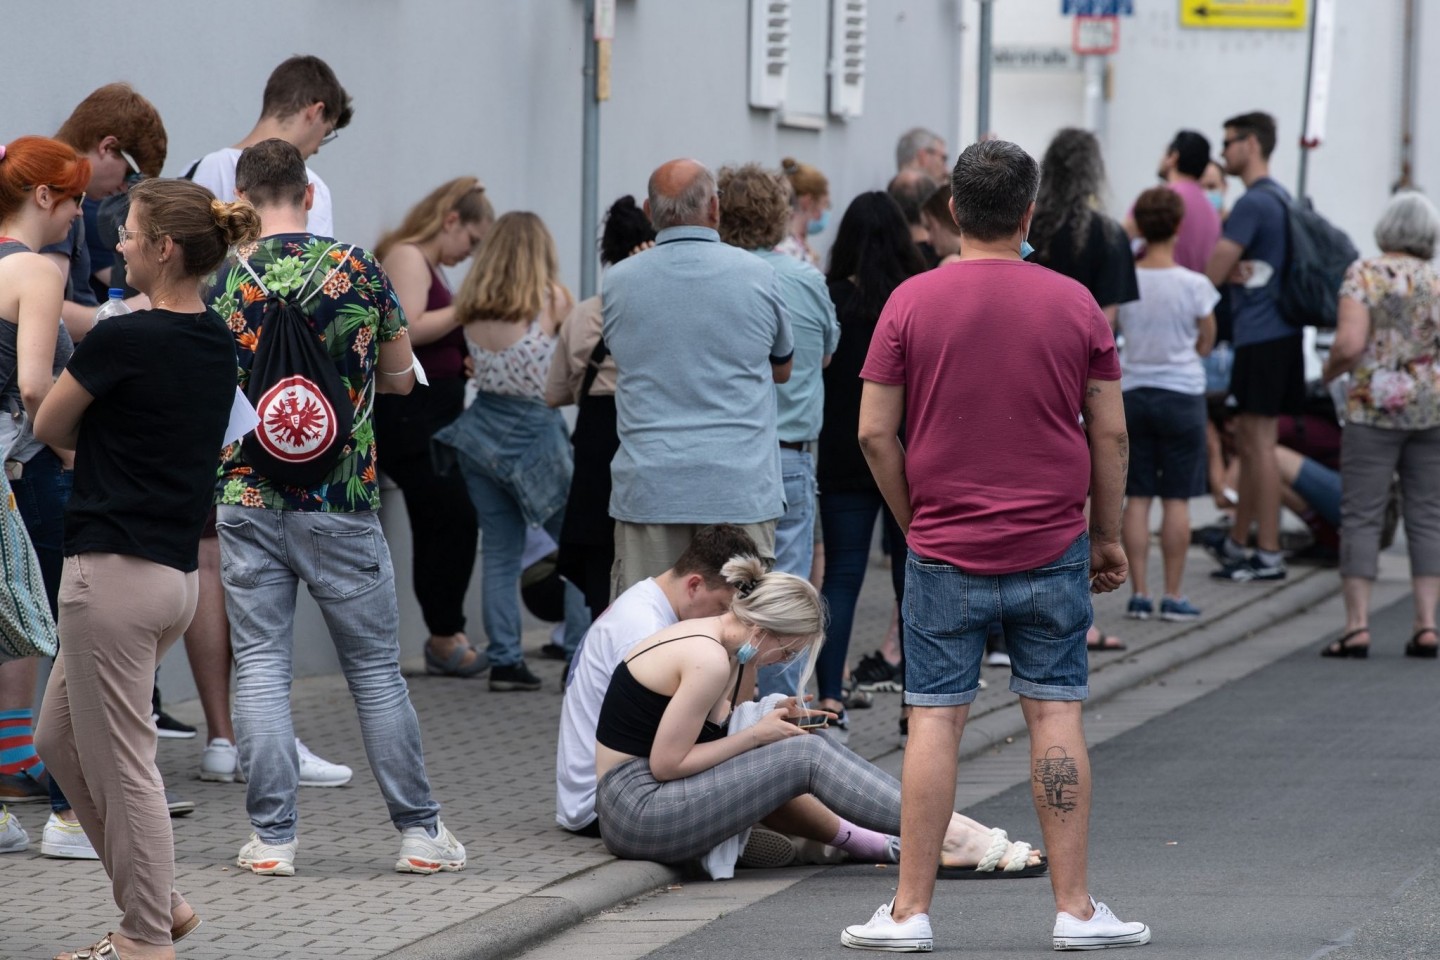 Insgesamt mehr als 1500 Menschen warten bei sommerlichen Temperaturen im Freien auf Einlass in eine Arztpraxis im hessischen Babenhausen.